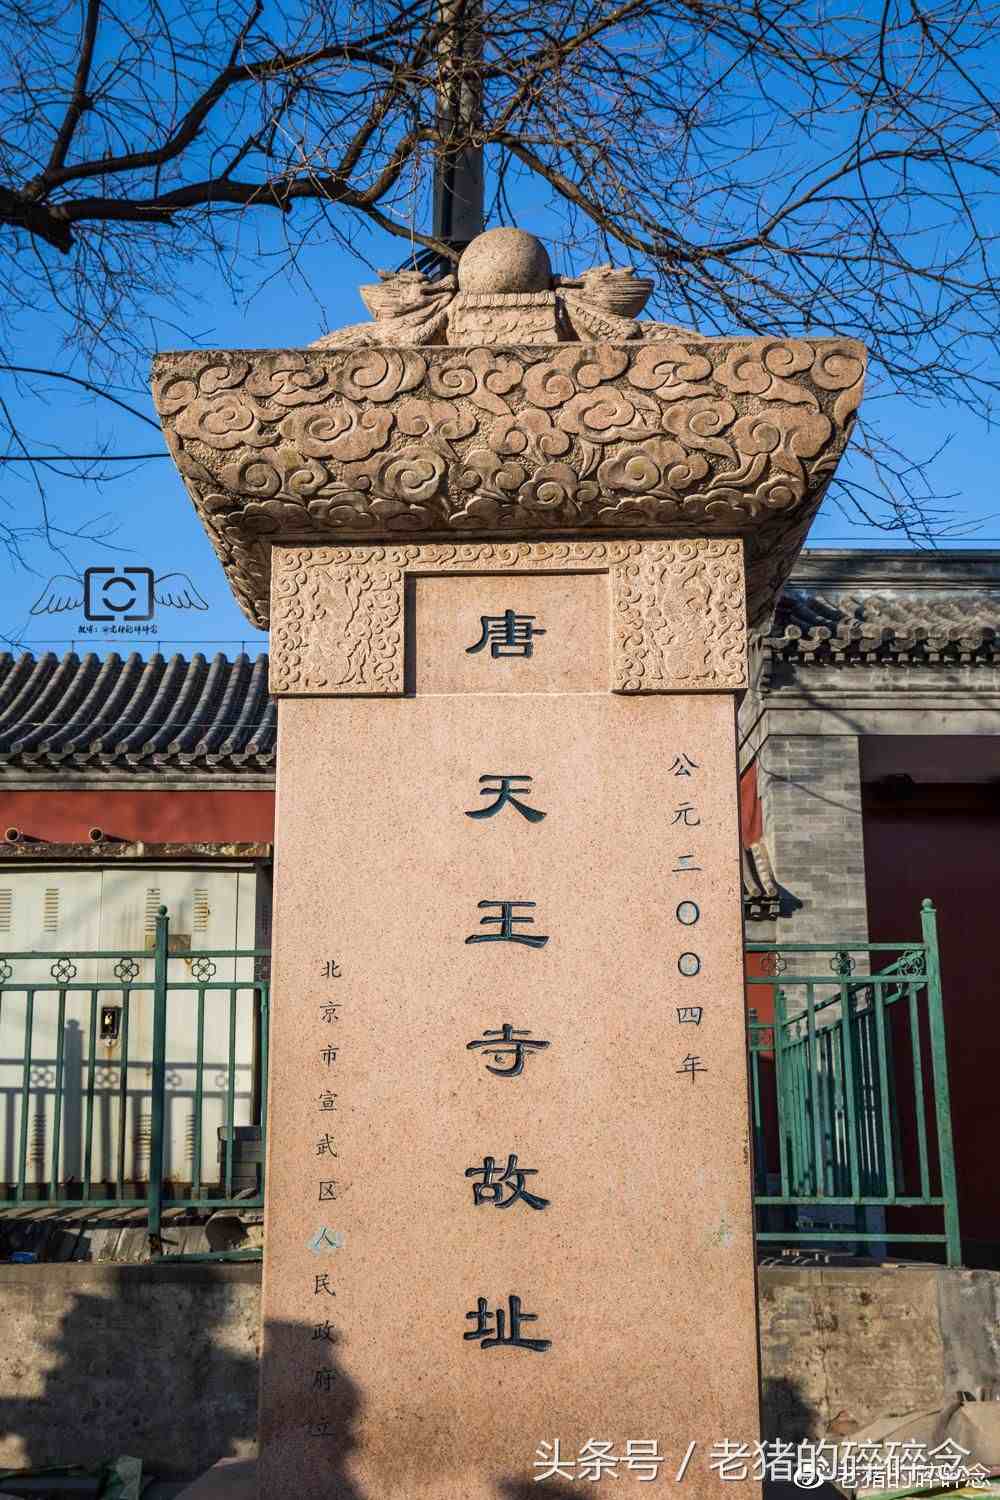 探访北京内城最古舍利塔之天宁寺塔